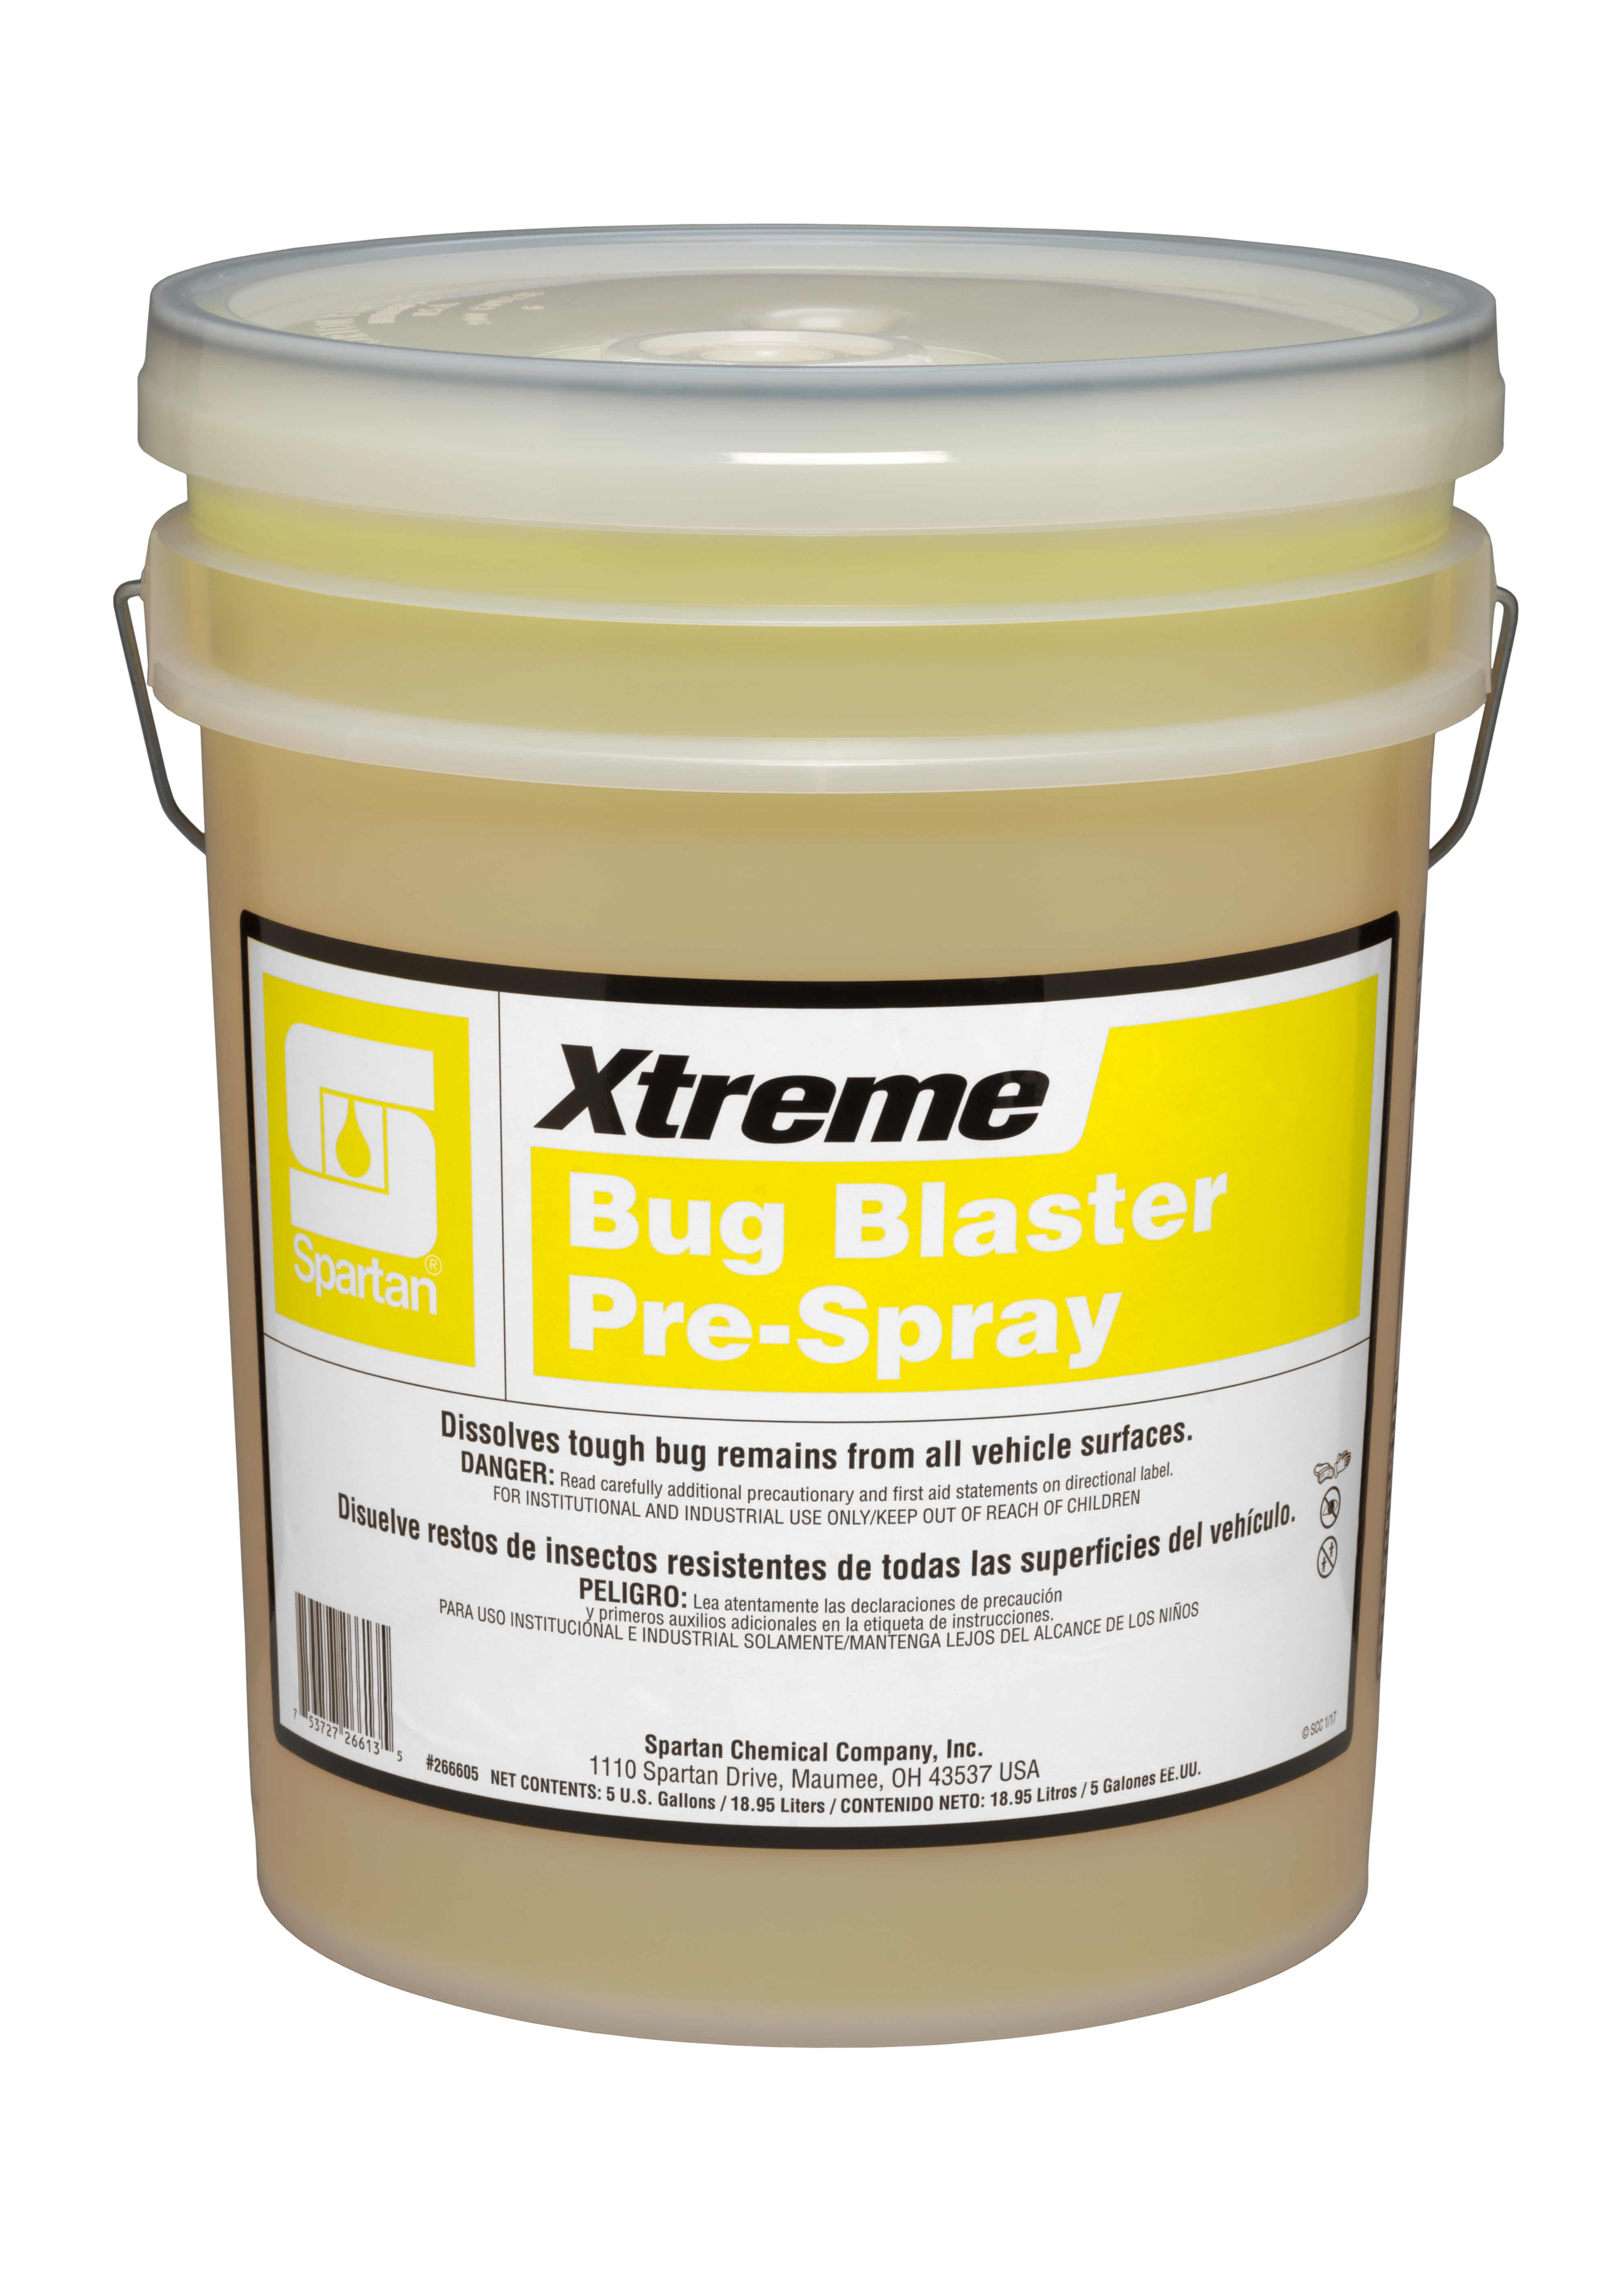 Spartan Chemical Company Xtreme Bug Blaster Pre-Spray, 5 GAL PAIL